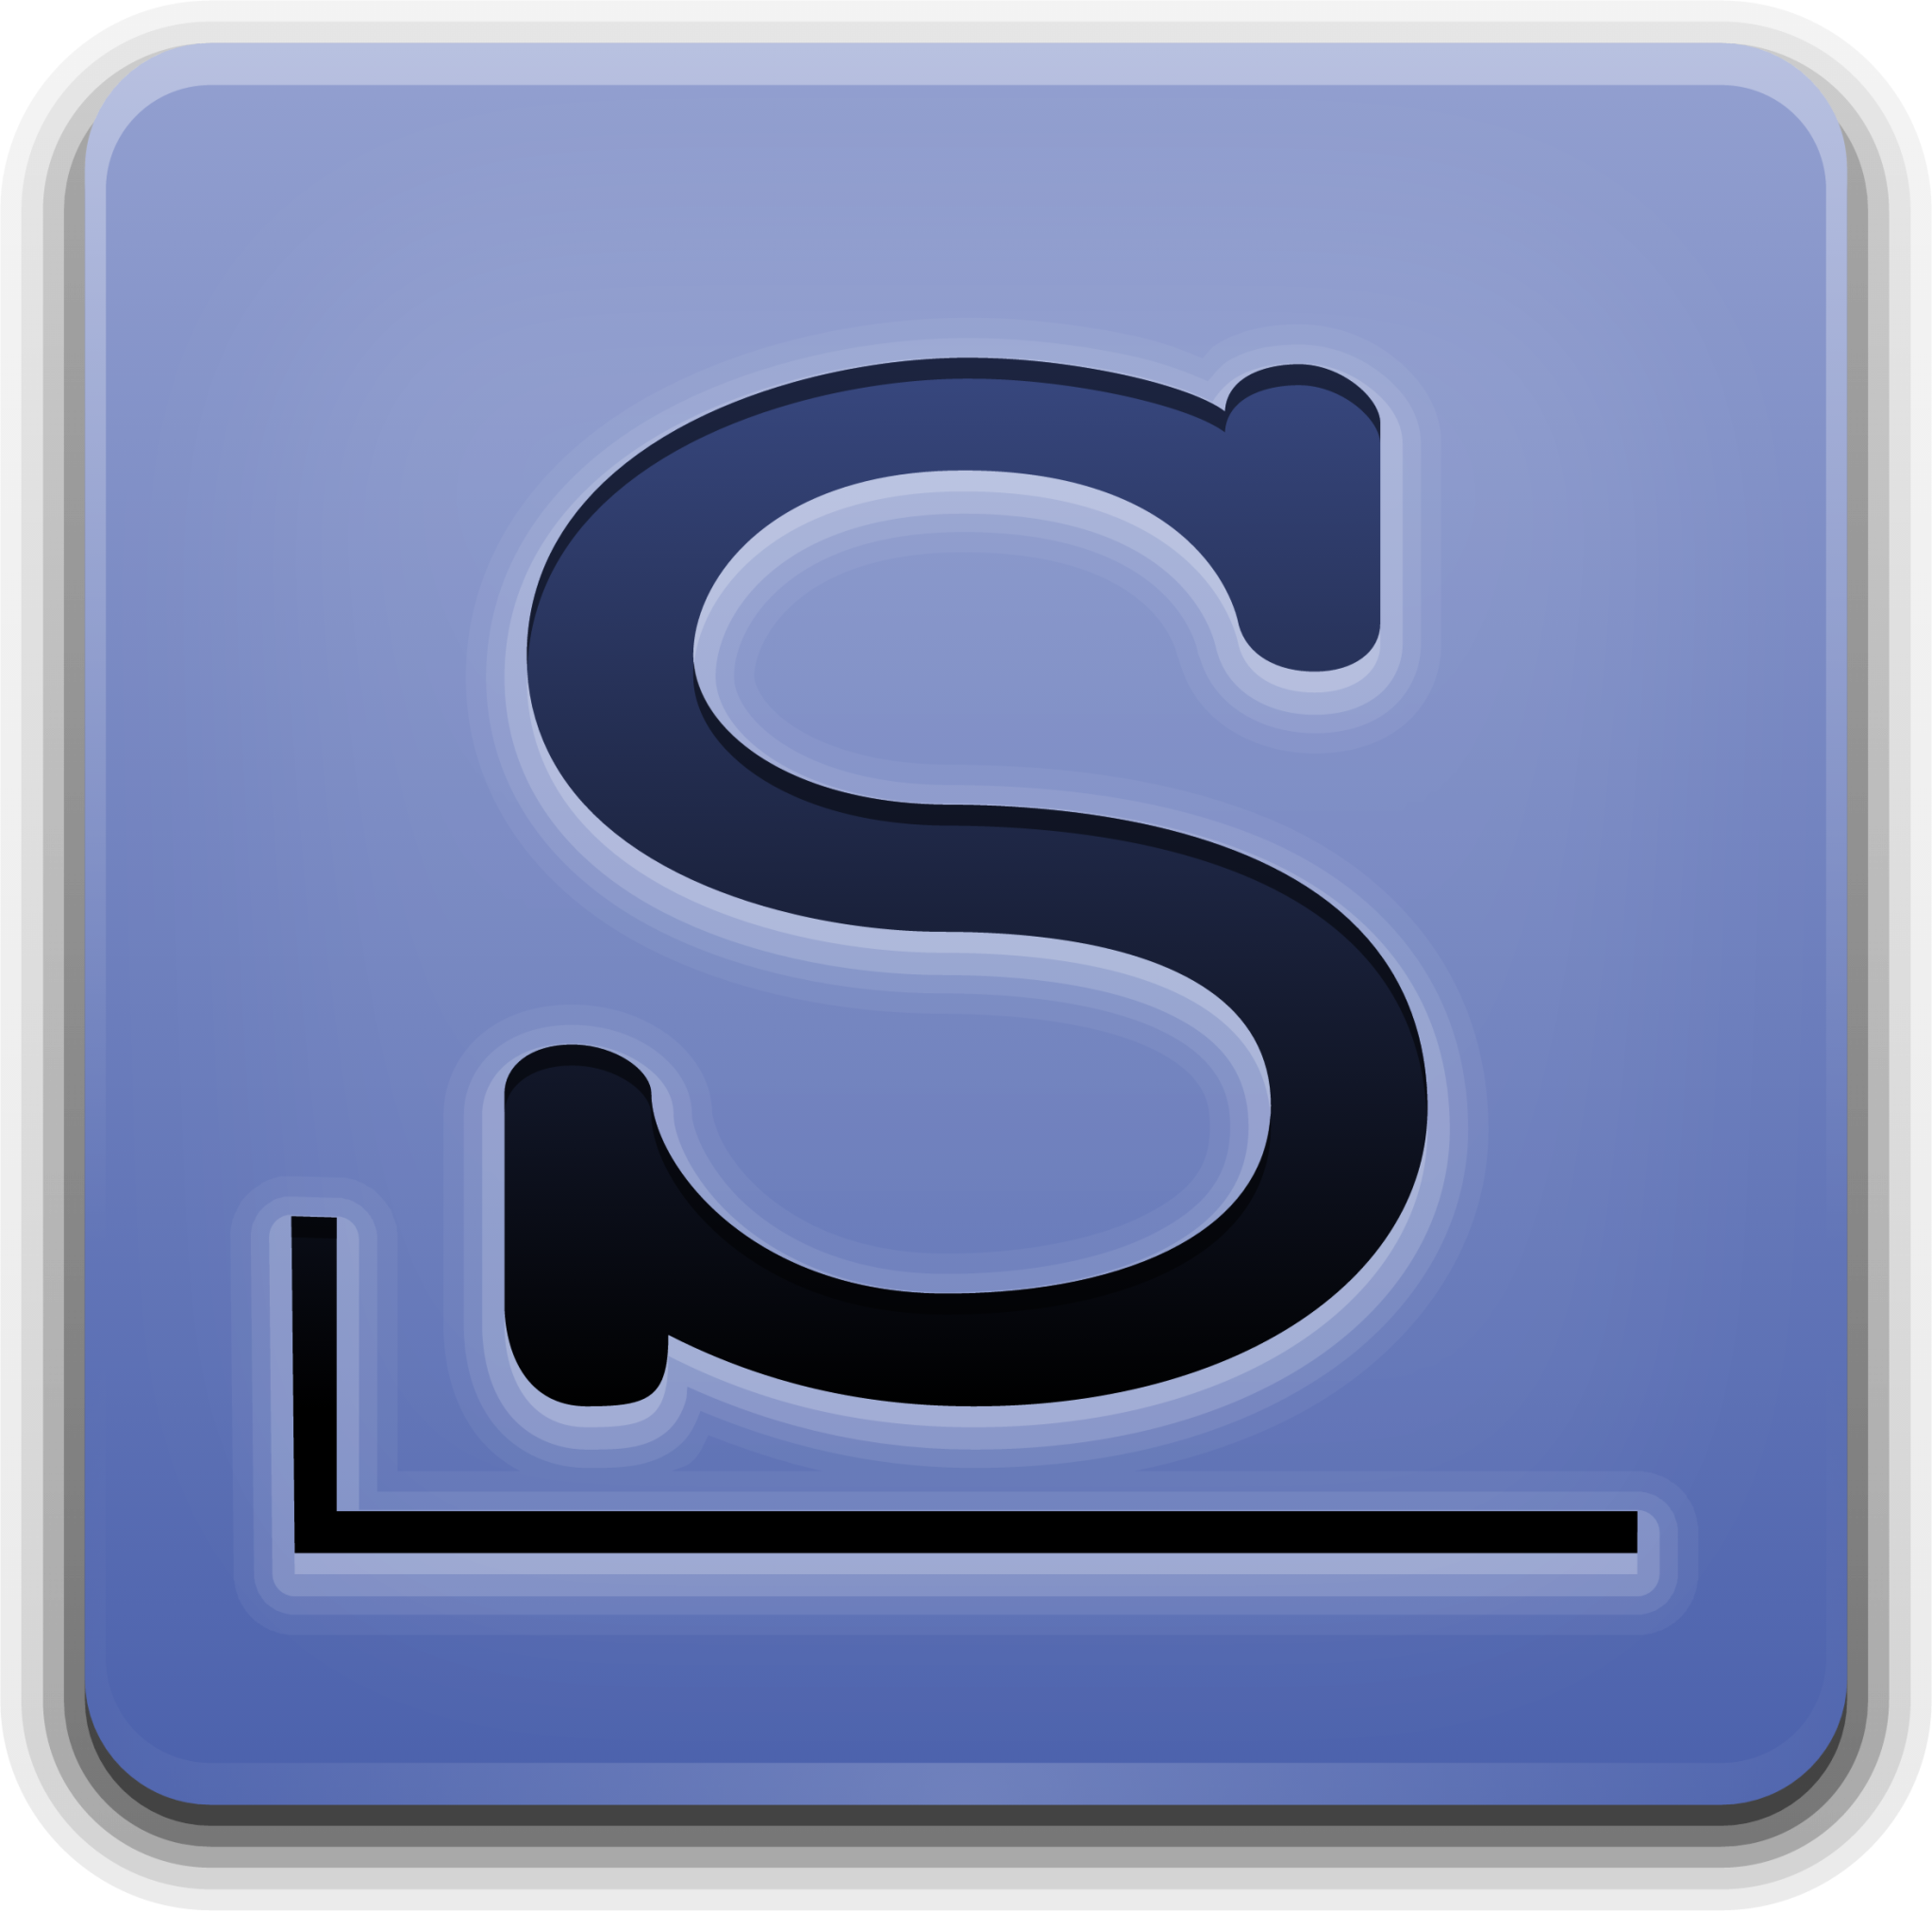 slackware logo